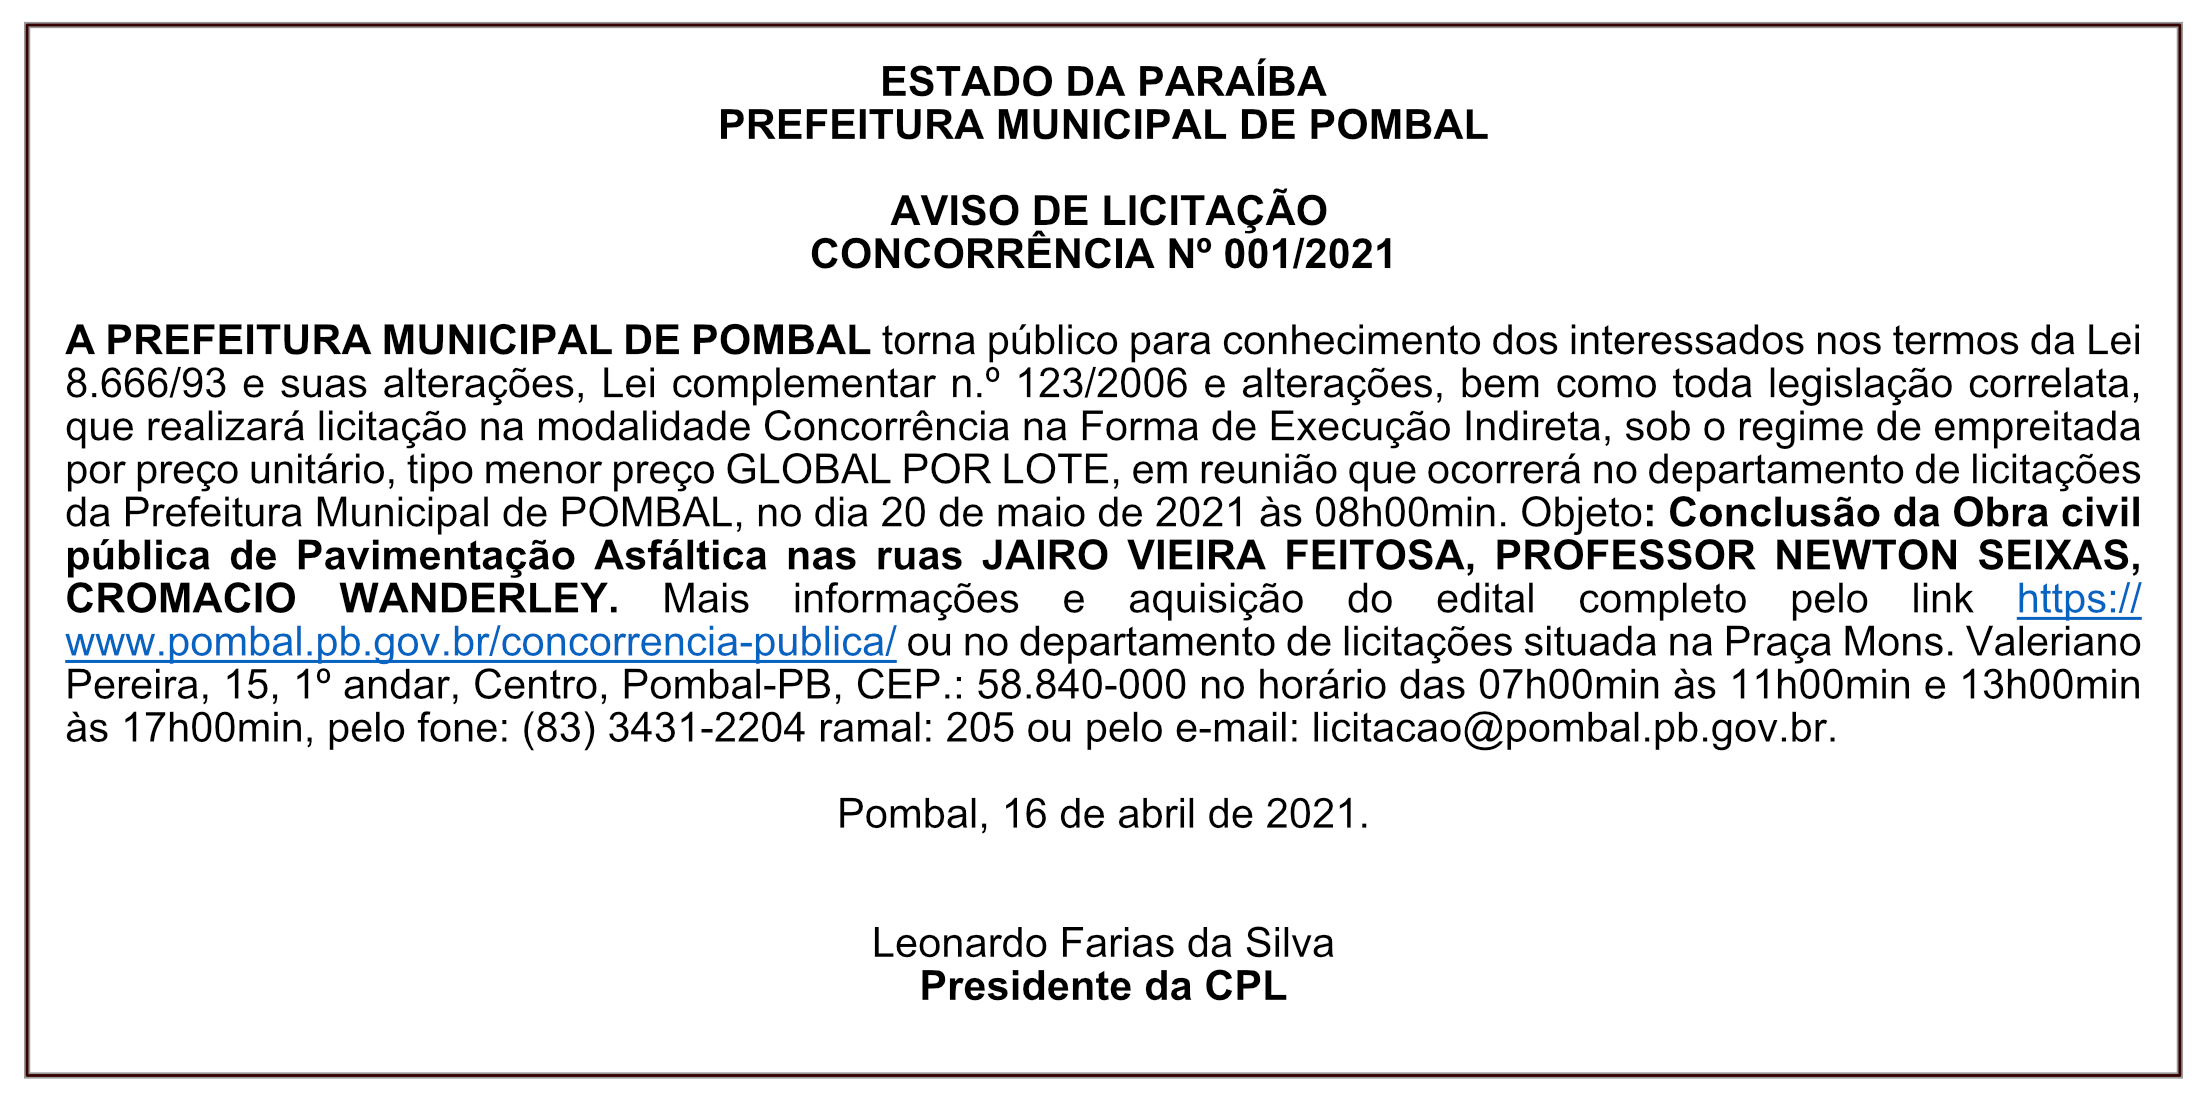 PREFEITURA MUNICIPAL DE POMBAL – AVISO DE LICITAÇÃO – CONCORRÊNCIA Nº 001/2021